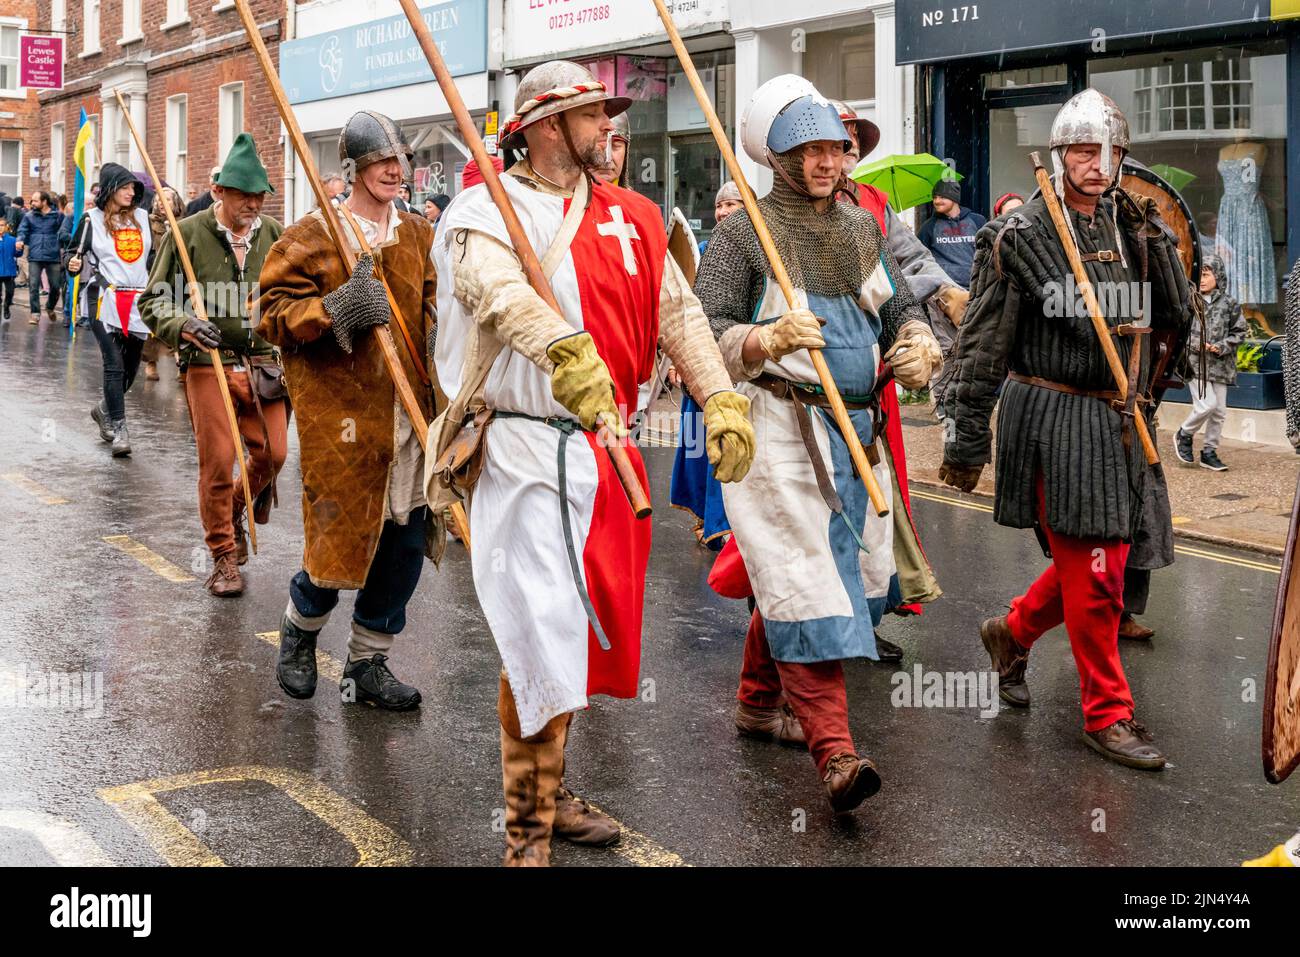 Les personnes vêtues de costume médiéval prennent part à Une procession dans les rues de Lewes lors de la reconstitution de la bataille de Lewes, à Lewes, au Royaume-Uni. Banque D'Images